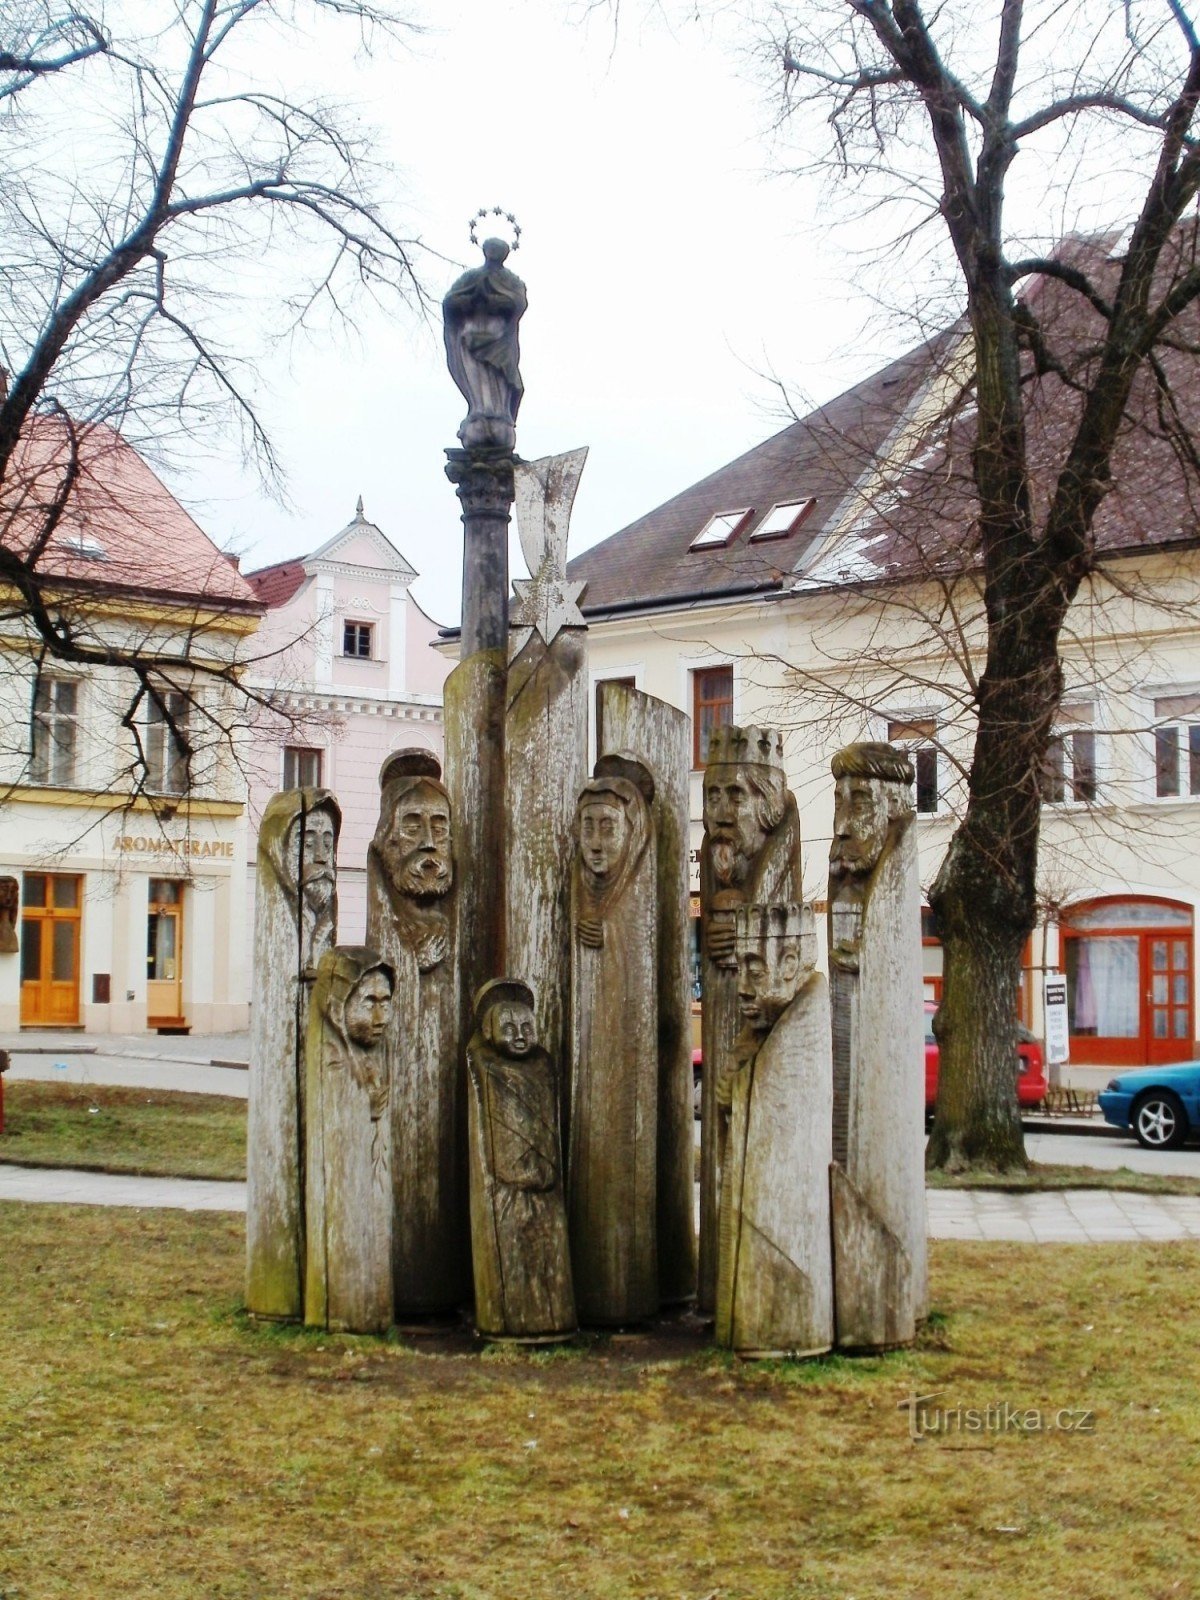 Třebechovice pod Oreb - Presepe in legno nella piazza